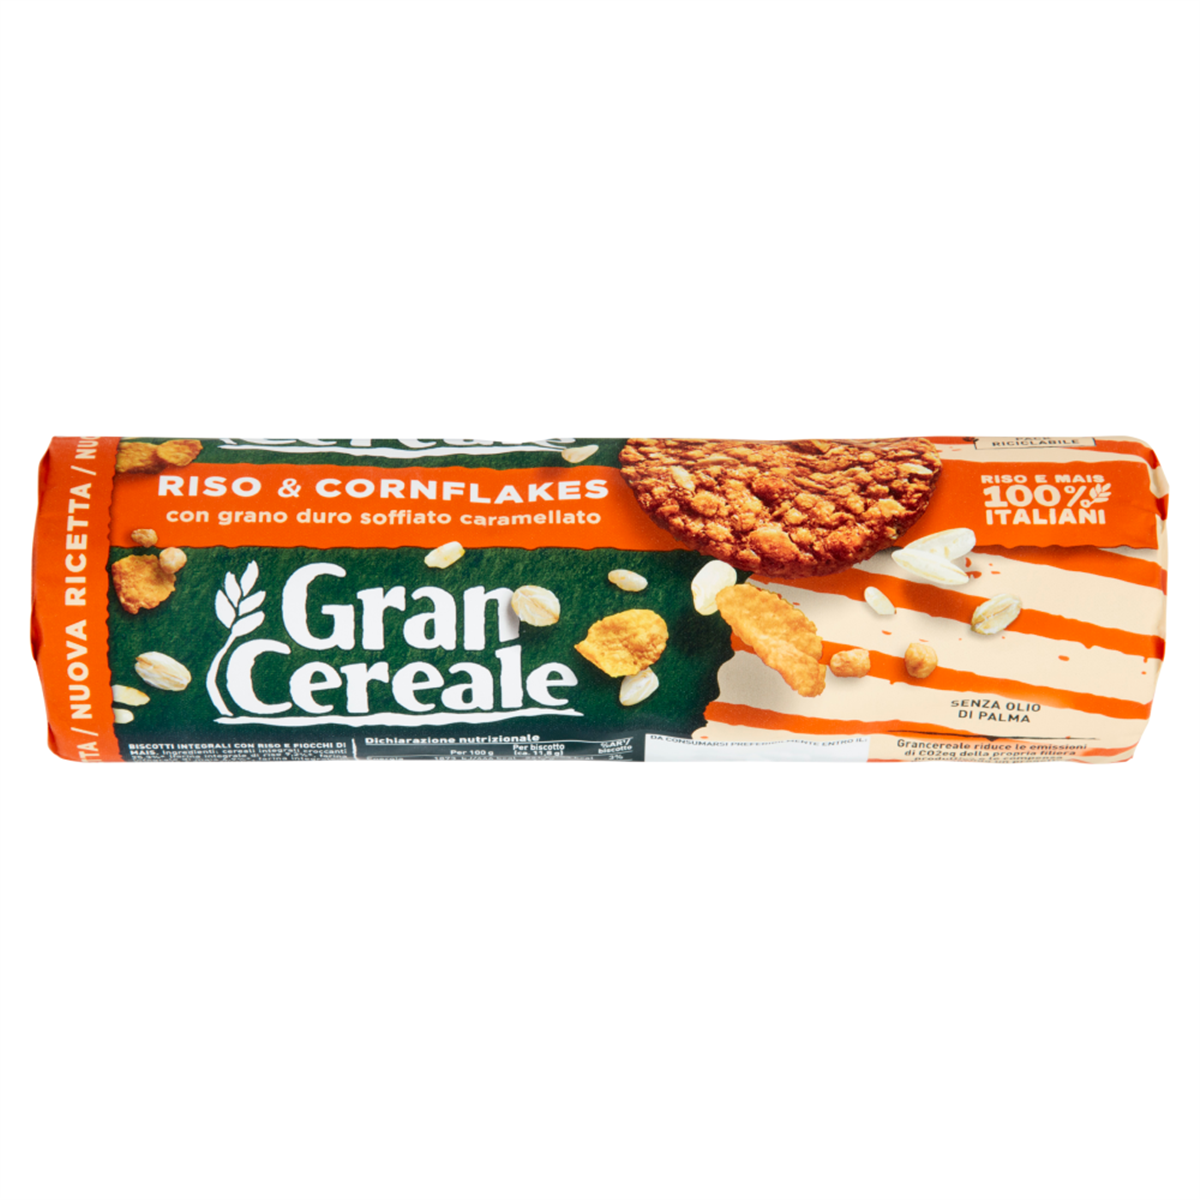 Gran Cereale Riso e Cornflakes